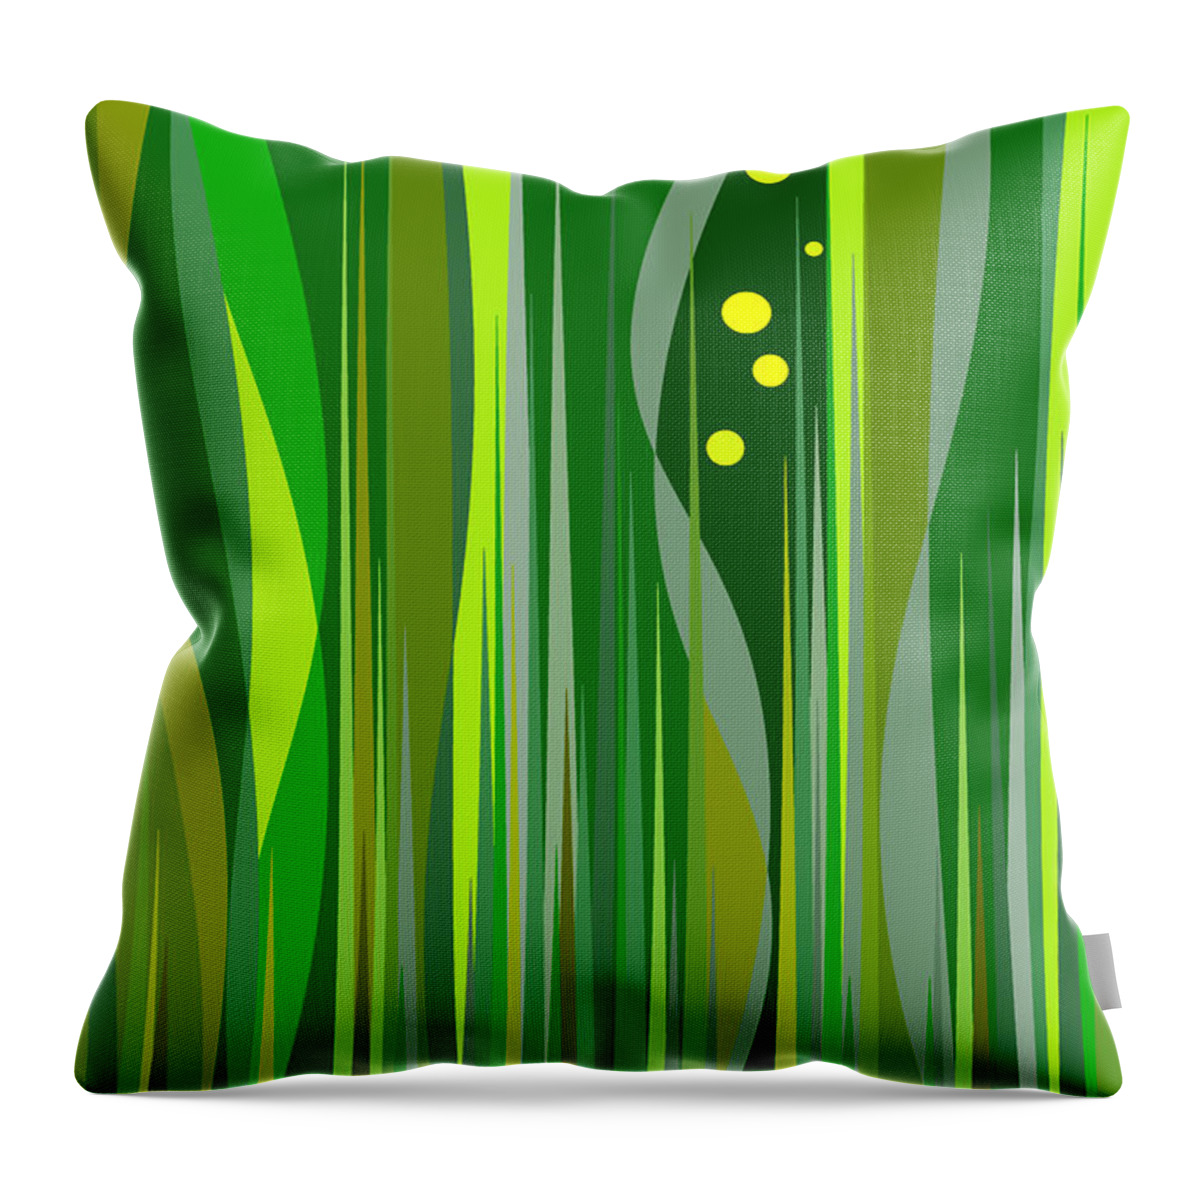 Grass Throw Pillow featuring the digital art Grass by Val Arie